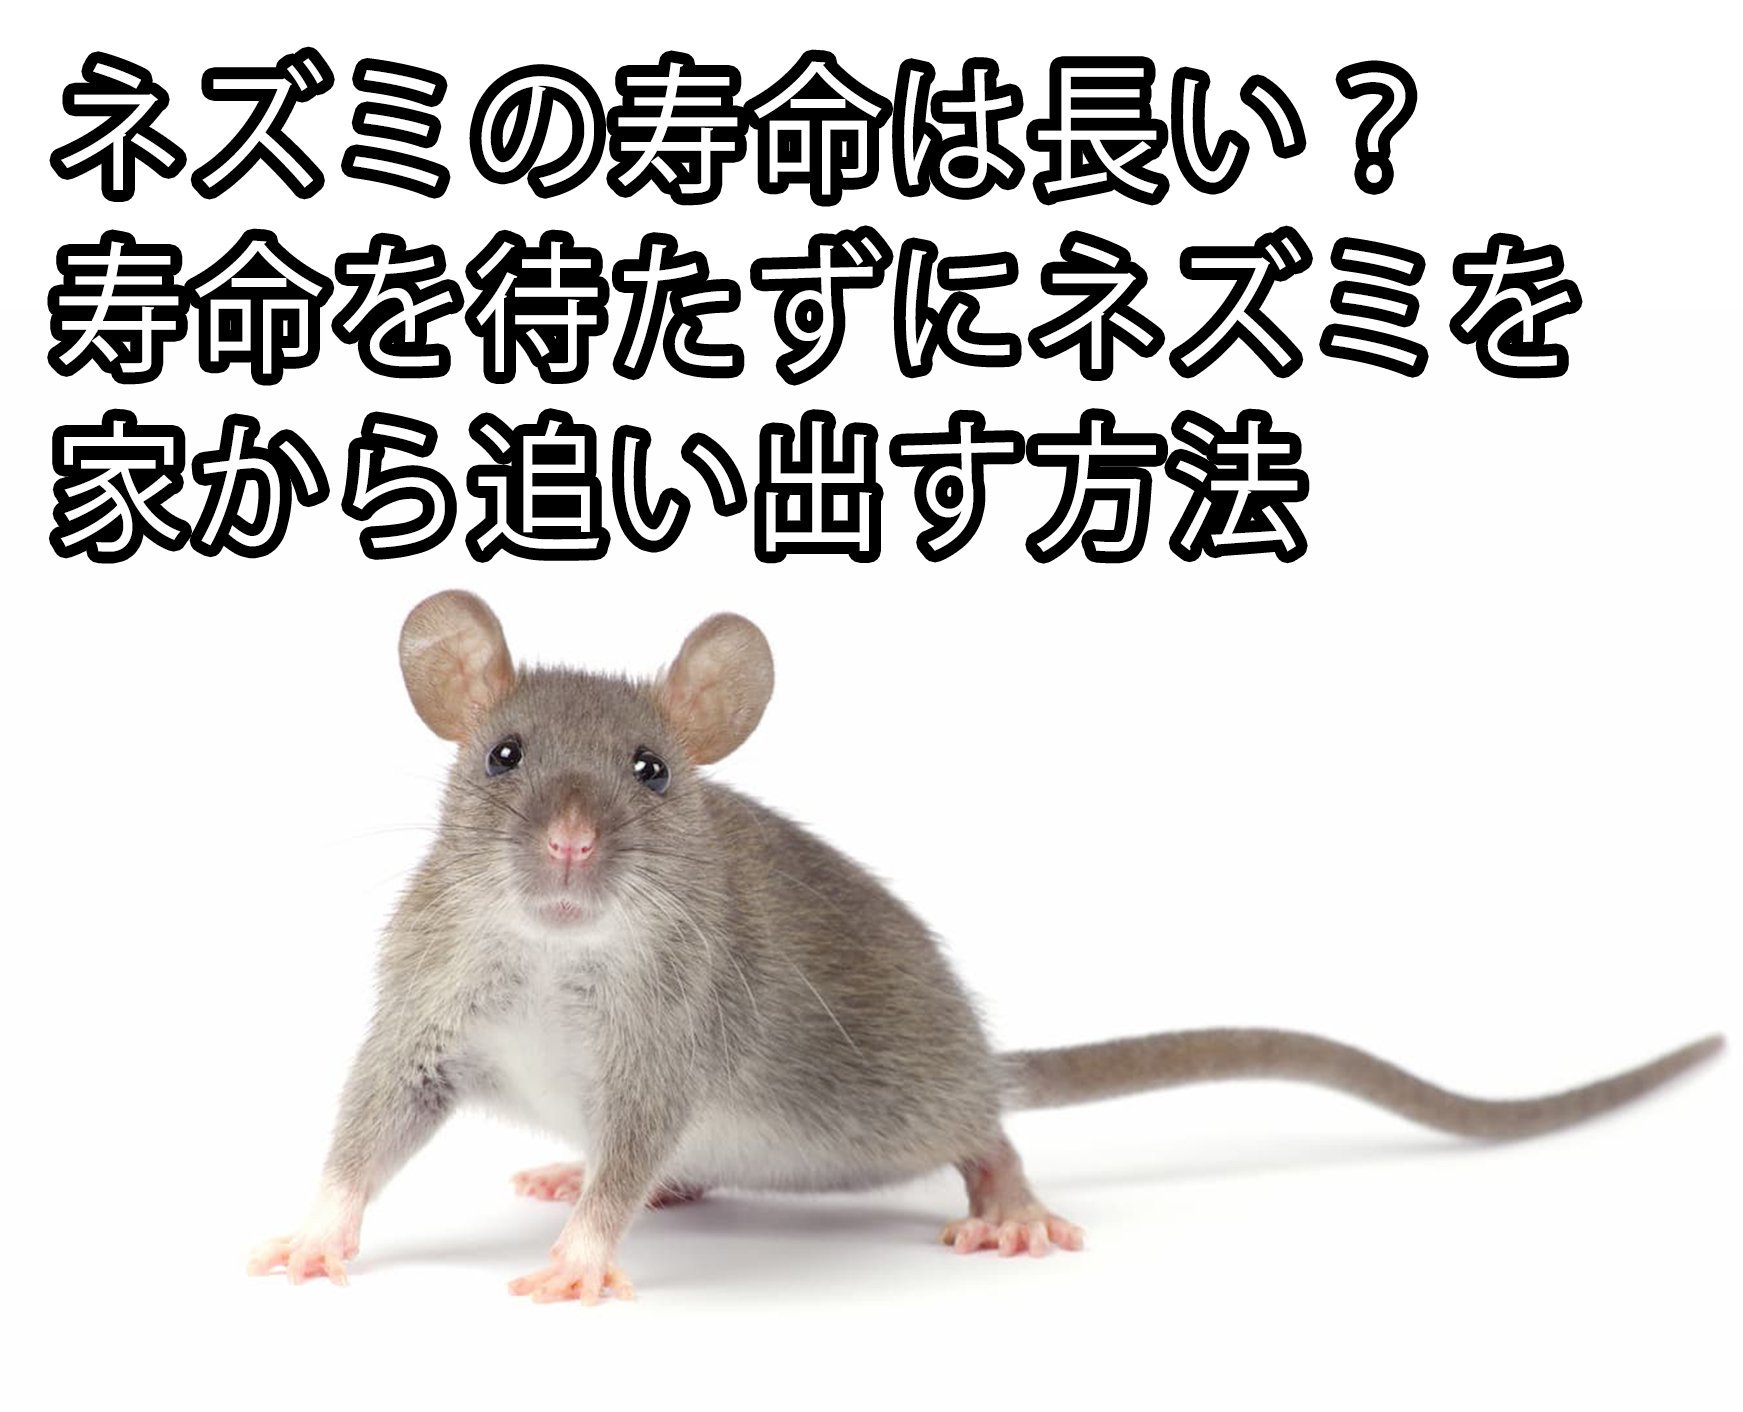 ネズミの寿命は長い 寿命を待たずにネズミを家から追い出す方法 株式会社ミナト 害獣 害虫駆除